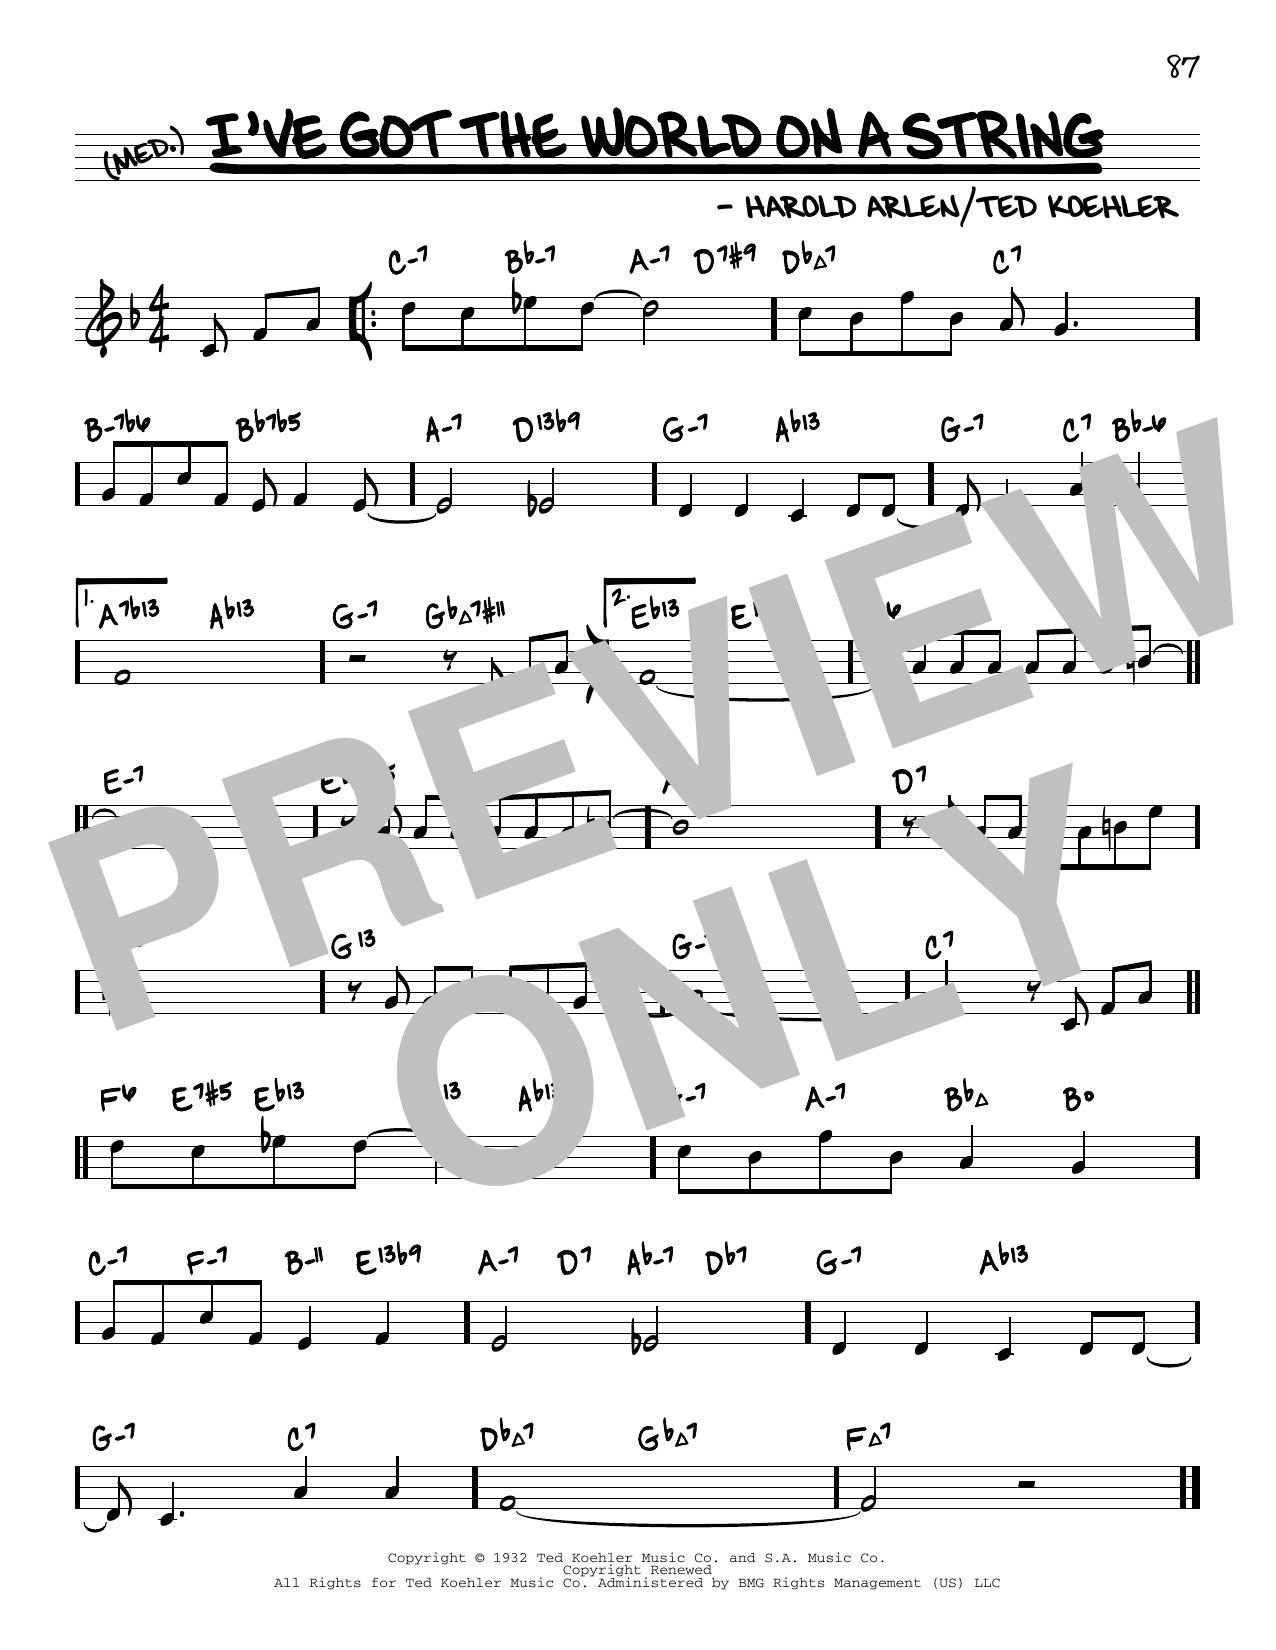 Harold Arlen I've Got The World On A String (arr. David Hazeltine) Sheet Music Notes & Chords for Real Book – Enhanced Chords - Download or Print PDF